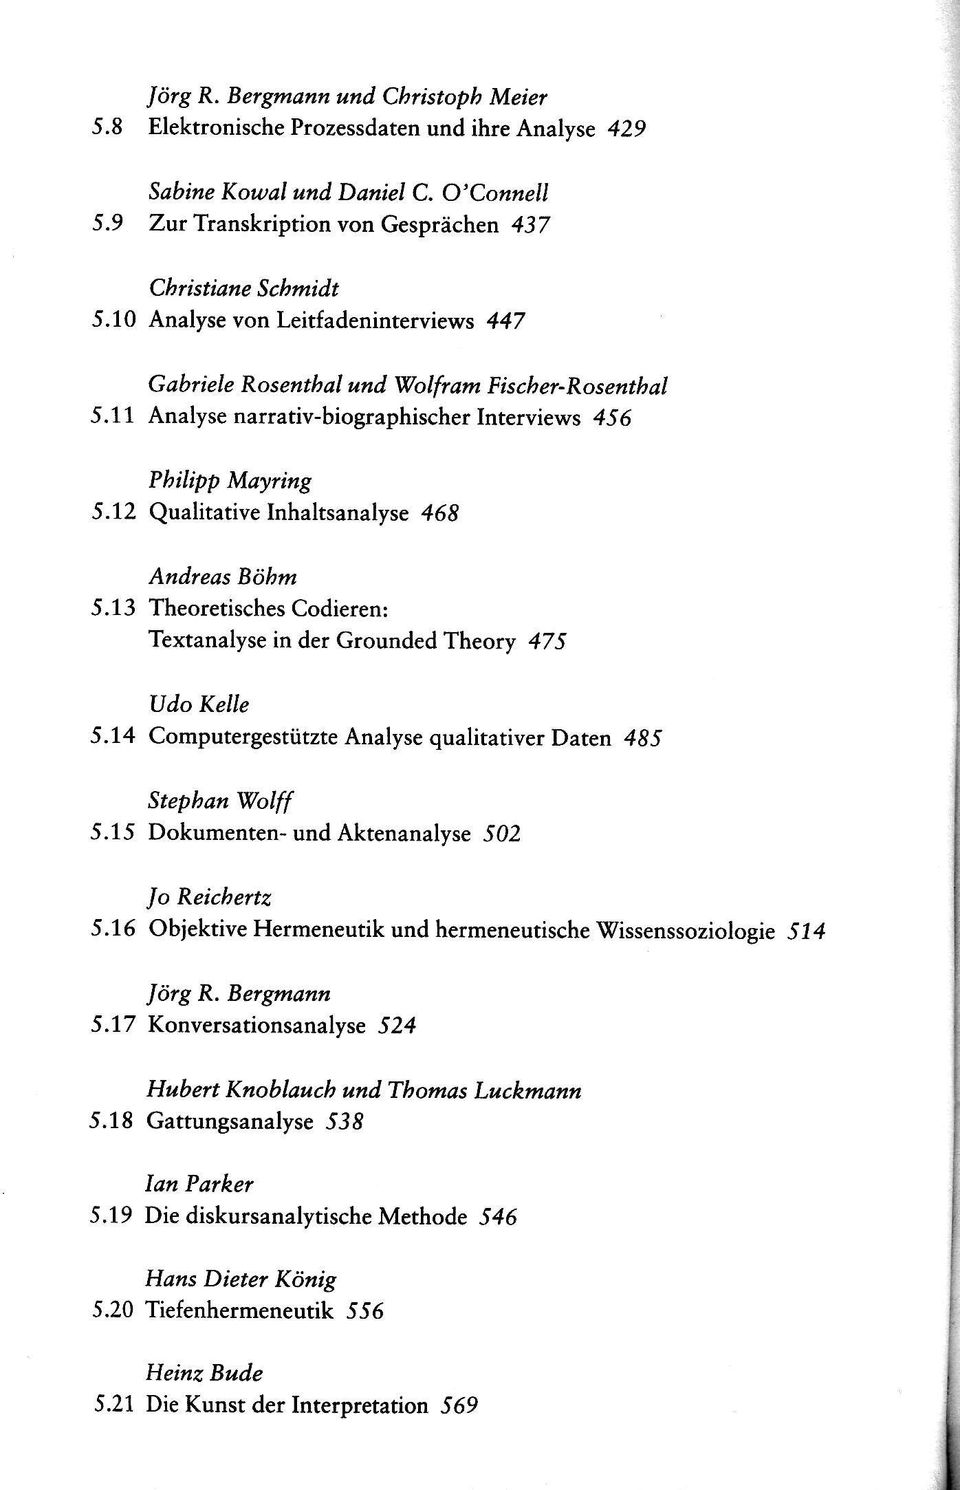 12 Qualitative Inhaltsanalyse 468 Andreas Böhm 5.13 Theoretisches Codieren: Textanalyse in der Grounded Theory 475 Udo Kelle 5.14 Computergestützte Analyse qualitativer Daten 485 Stephan Wolff 5.